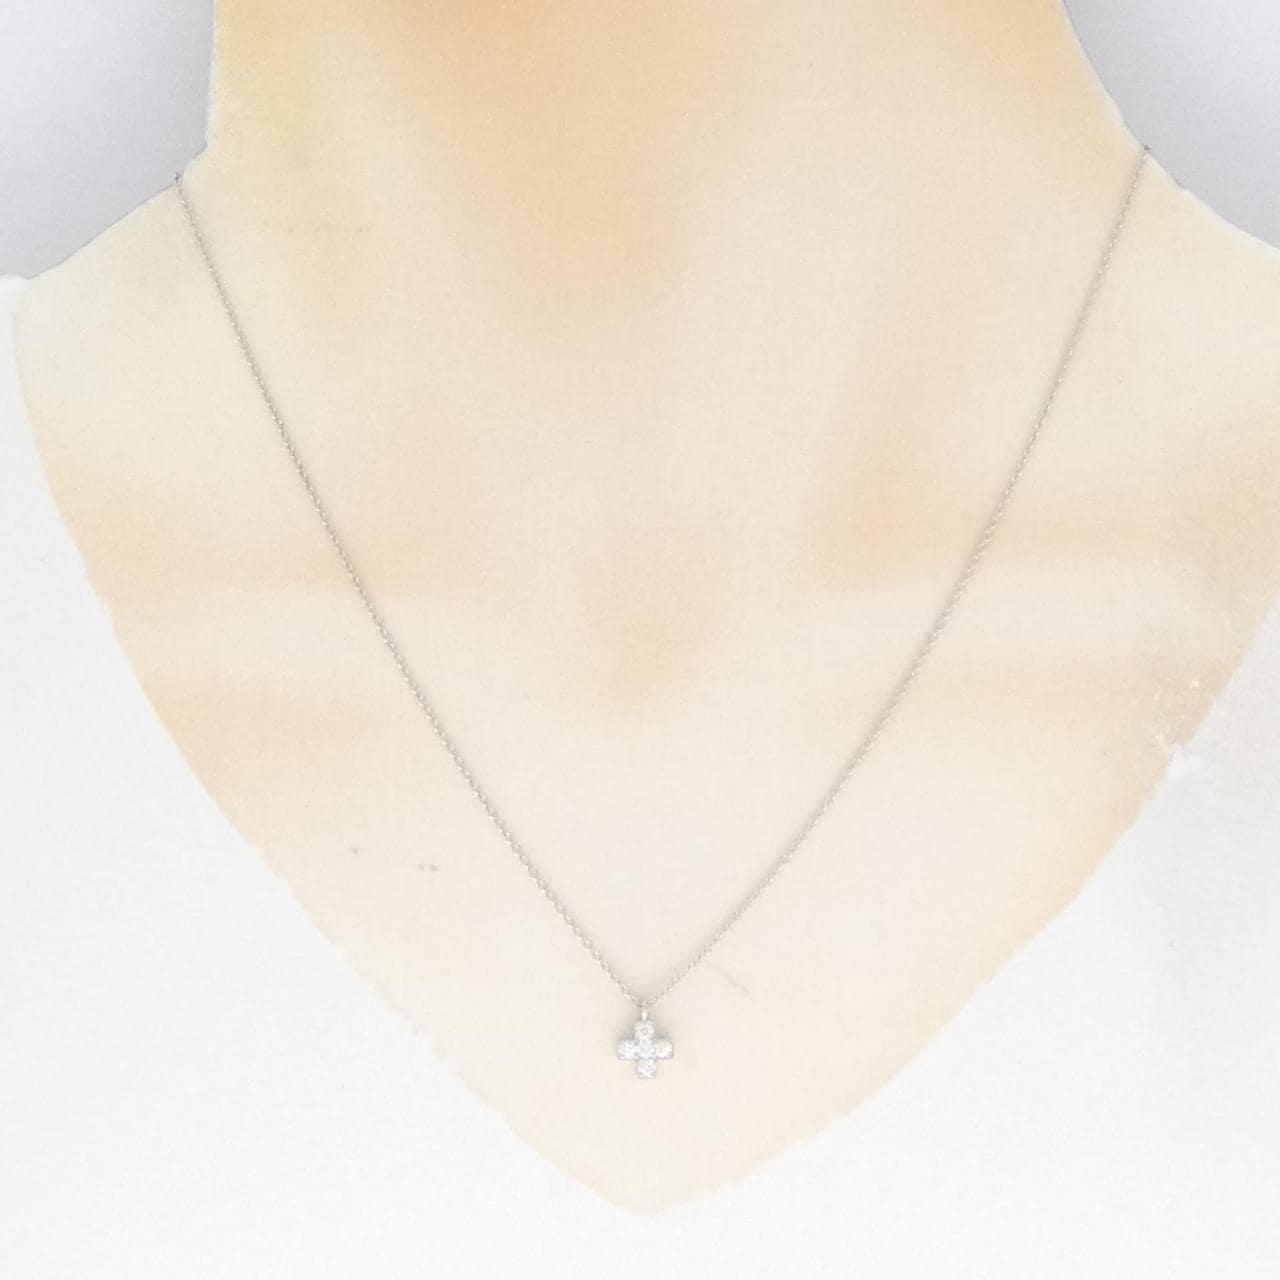 TIFFANY cruciform necklace